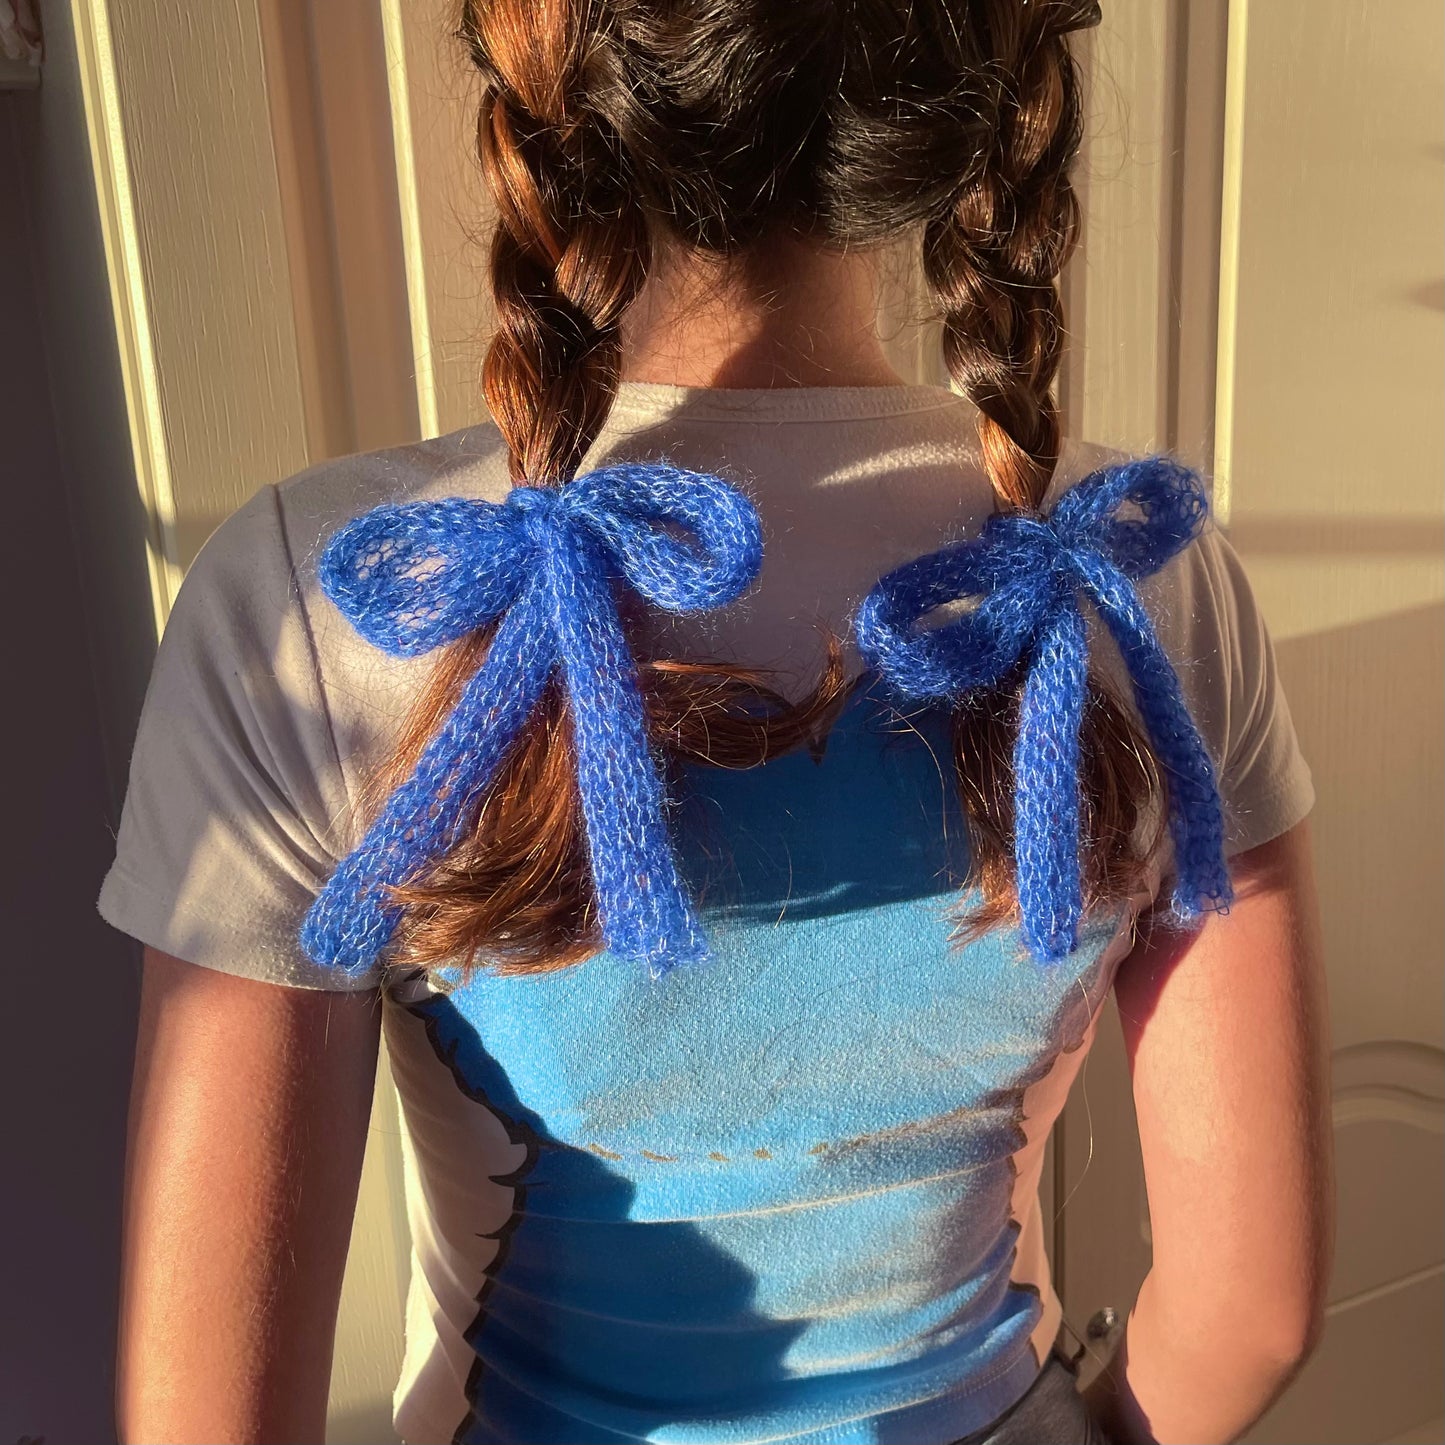 x2 handmade knitted hair bows in cobalt blue (pair)